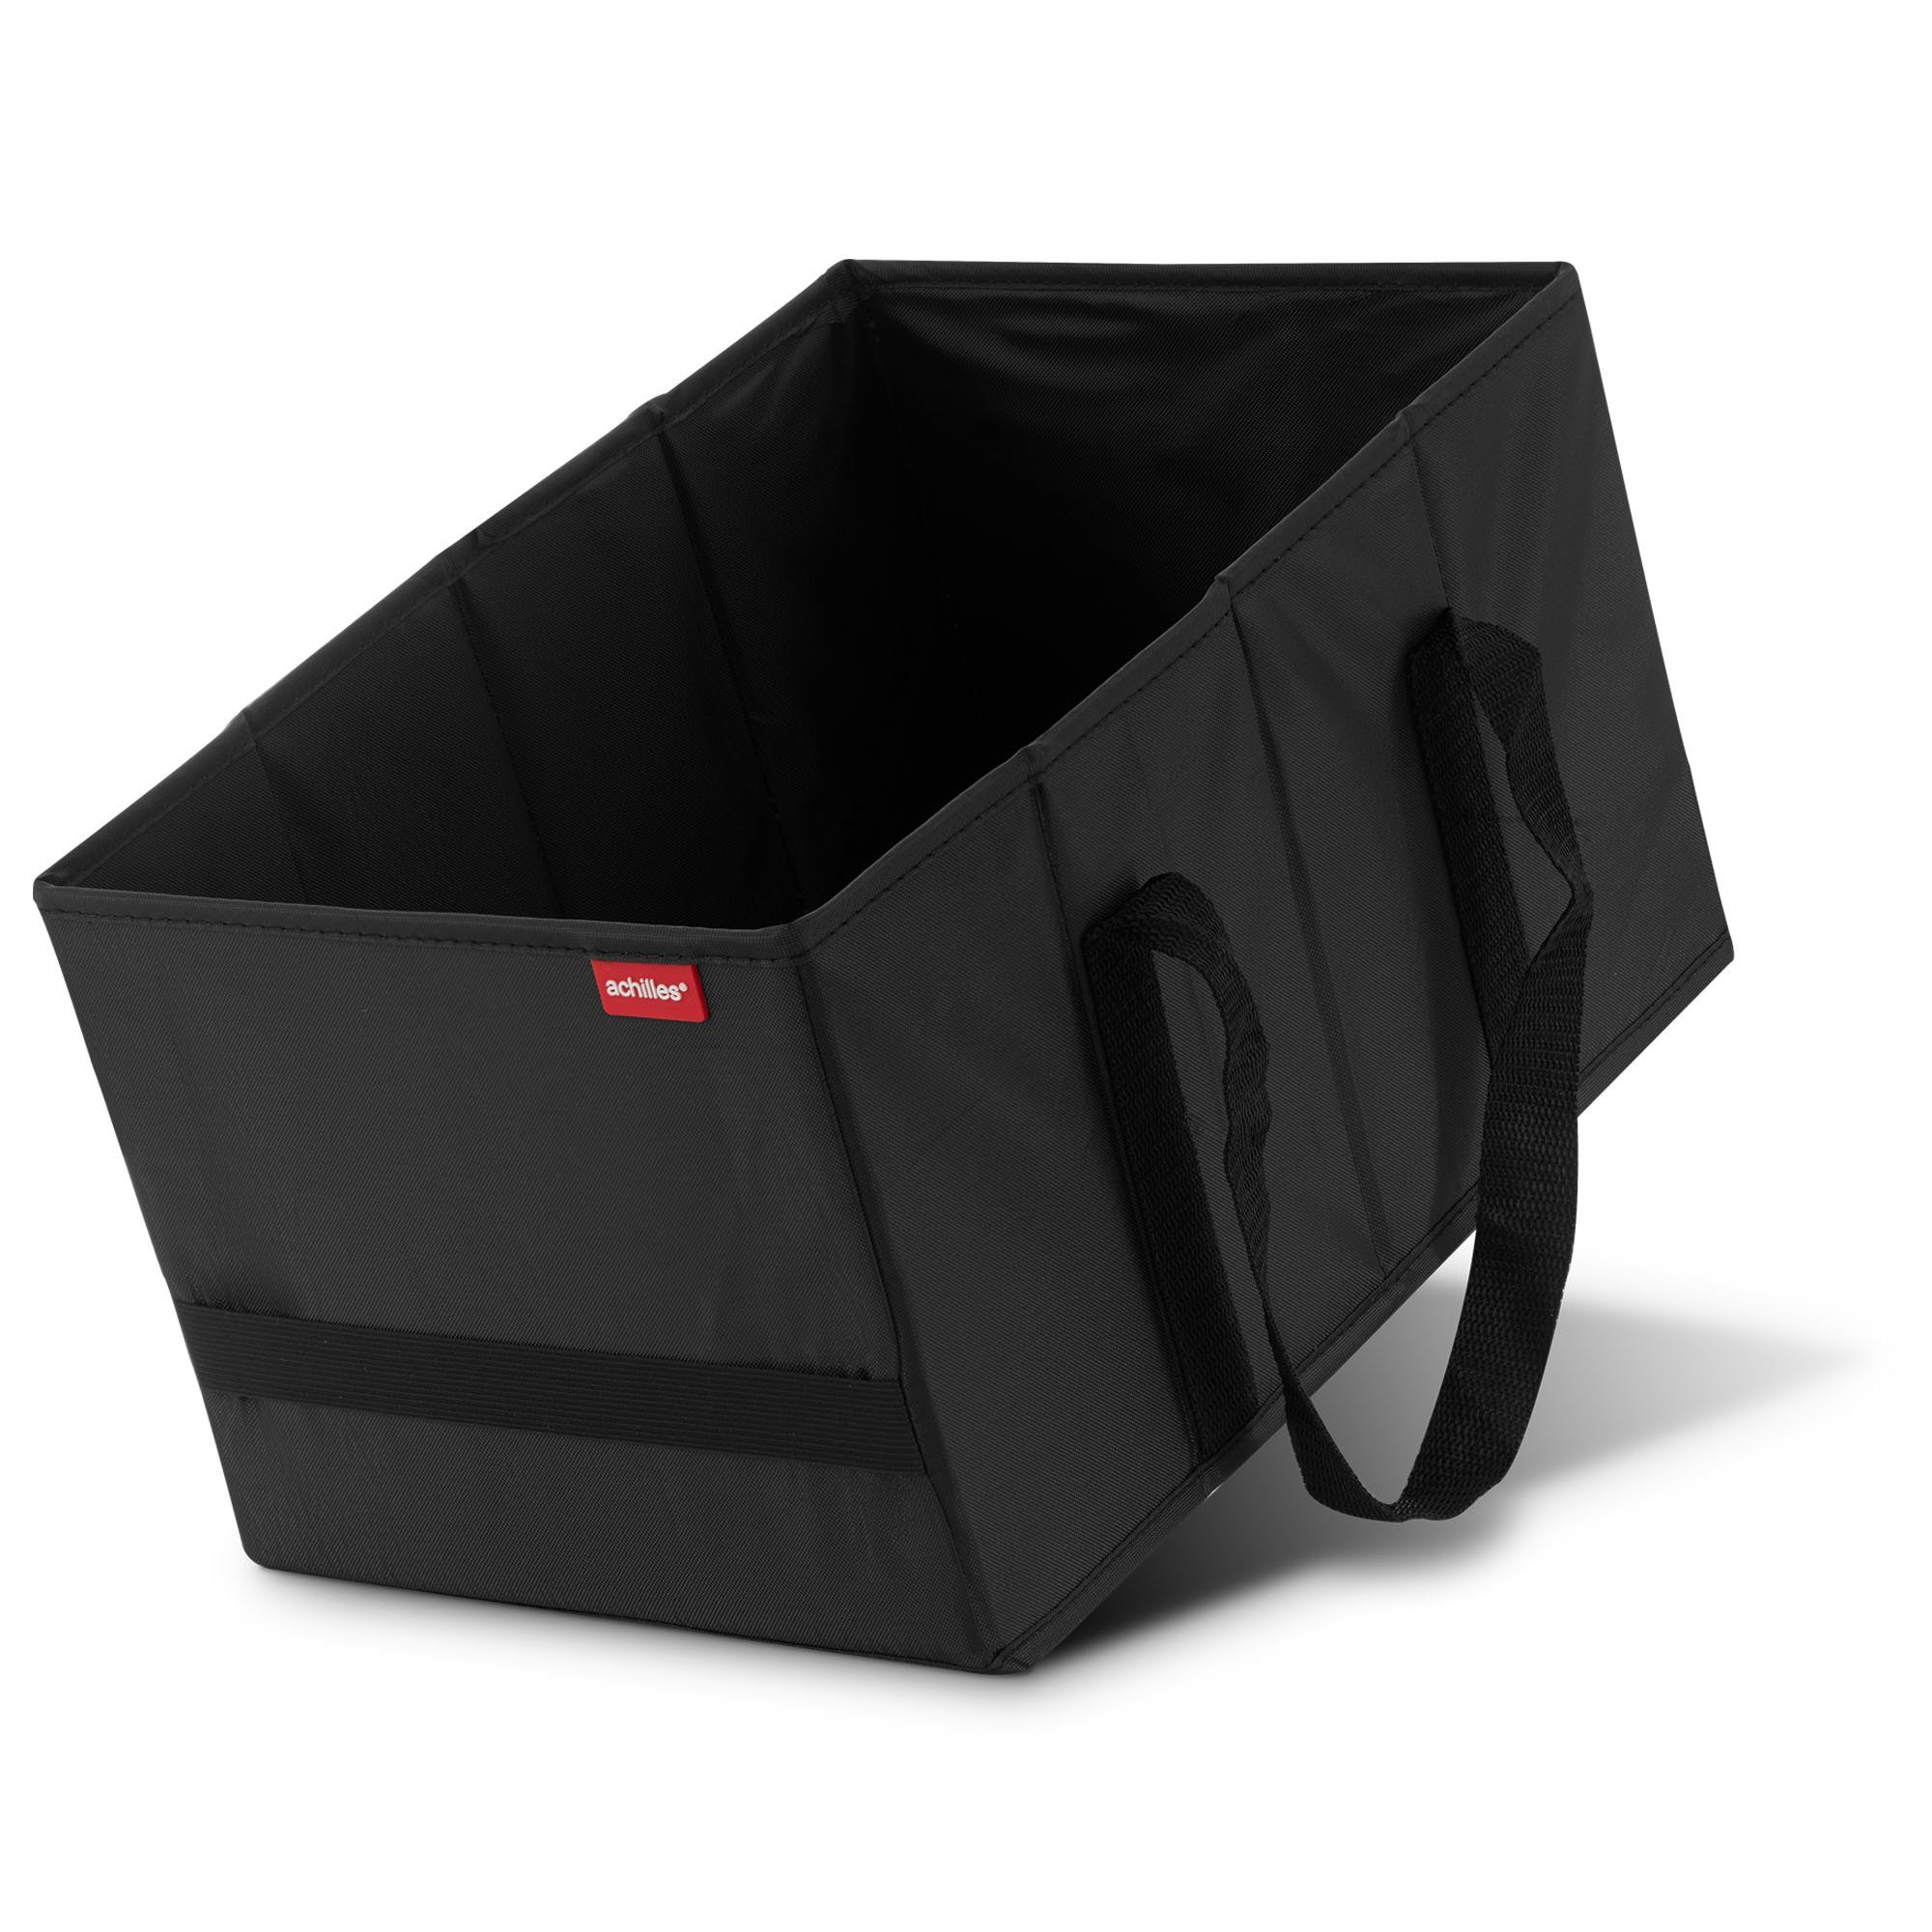 Kühltasche Kühleinsatz für Klappbox Faltbare Kühltasche schwarz